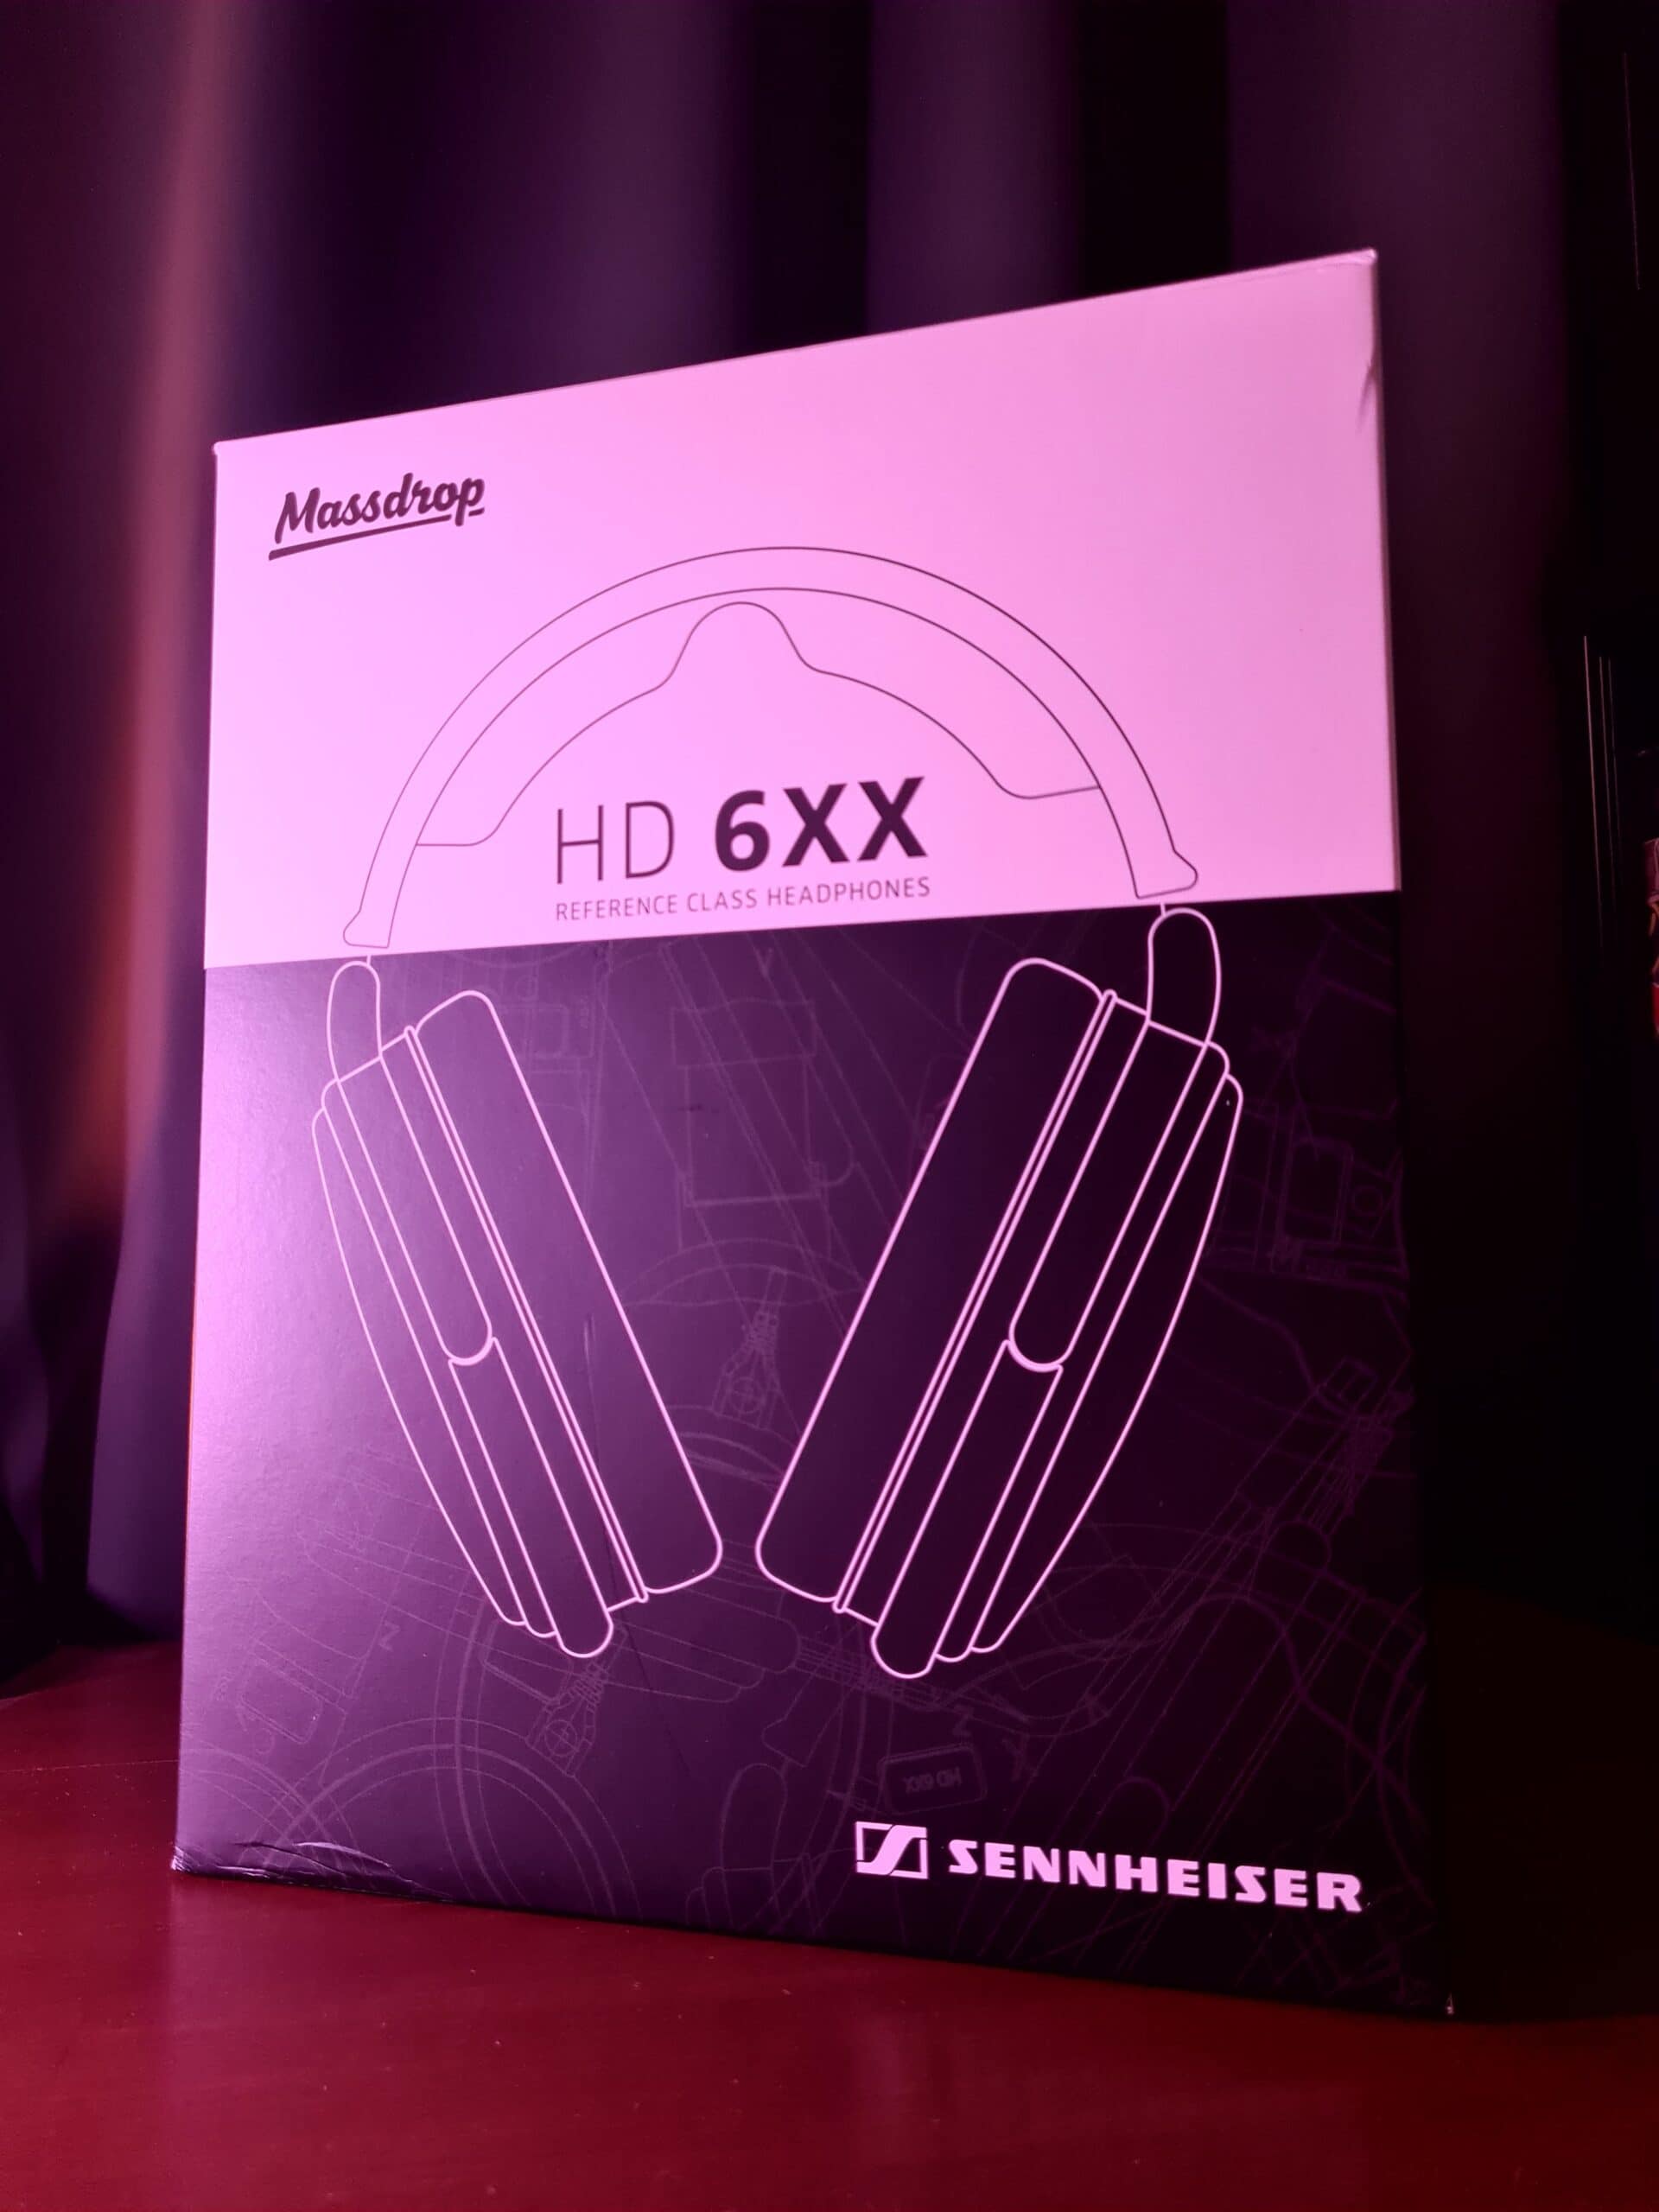 Drop Sennheiser HD 6XX Headphones product package